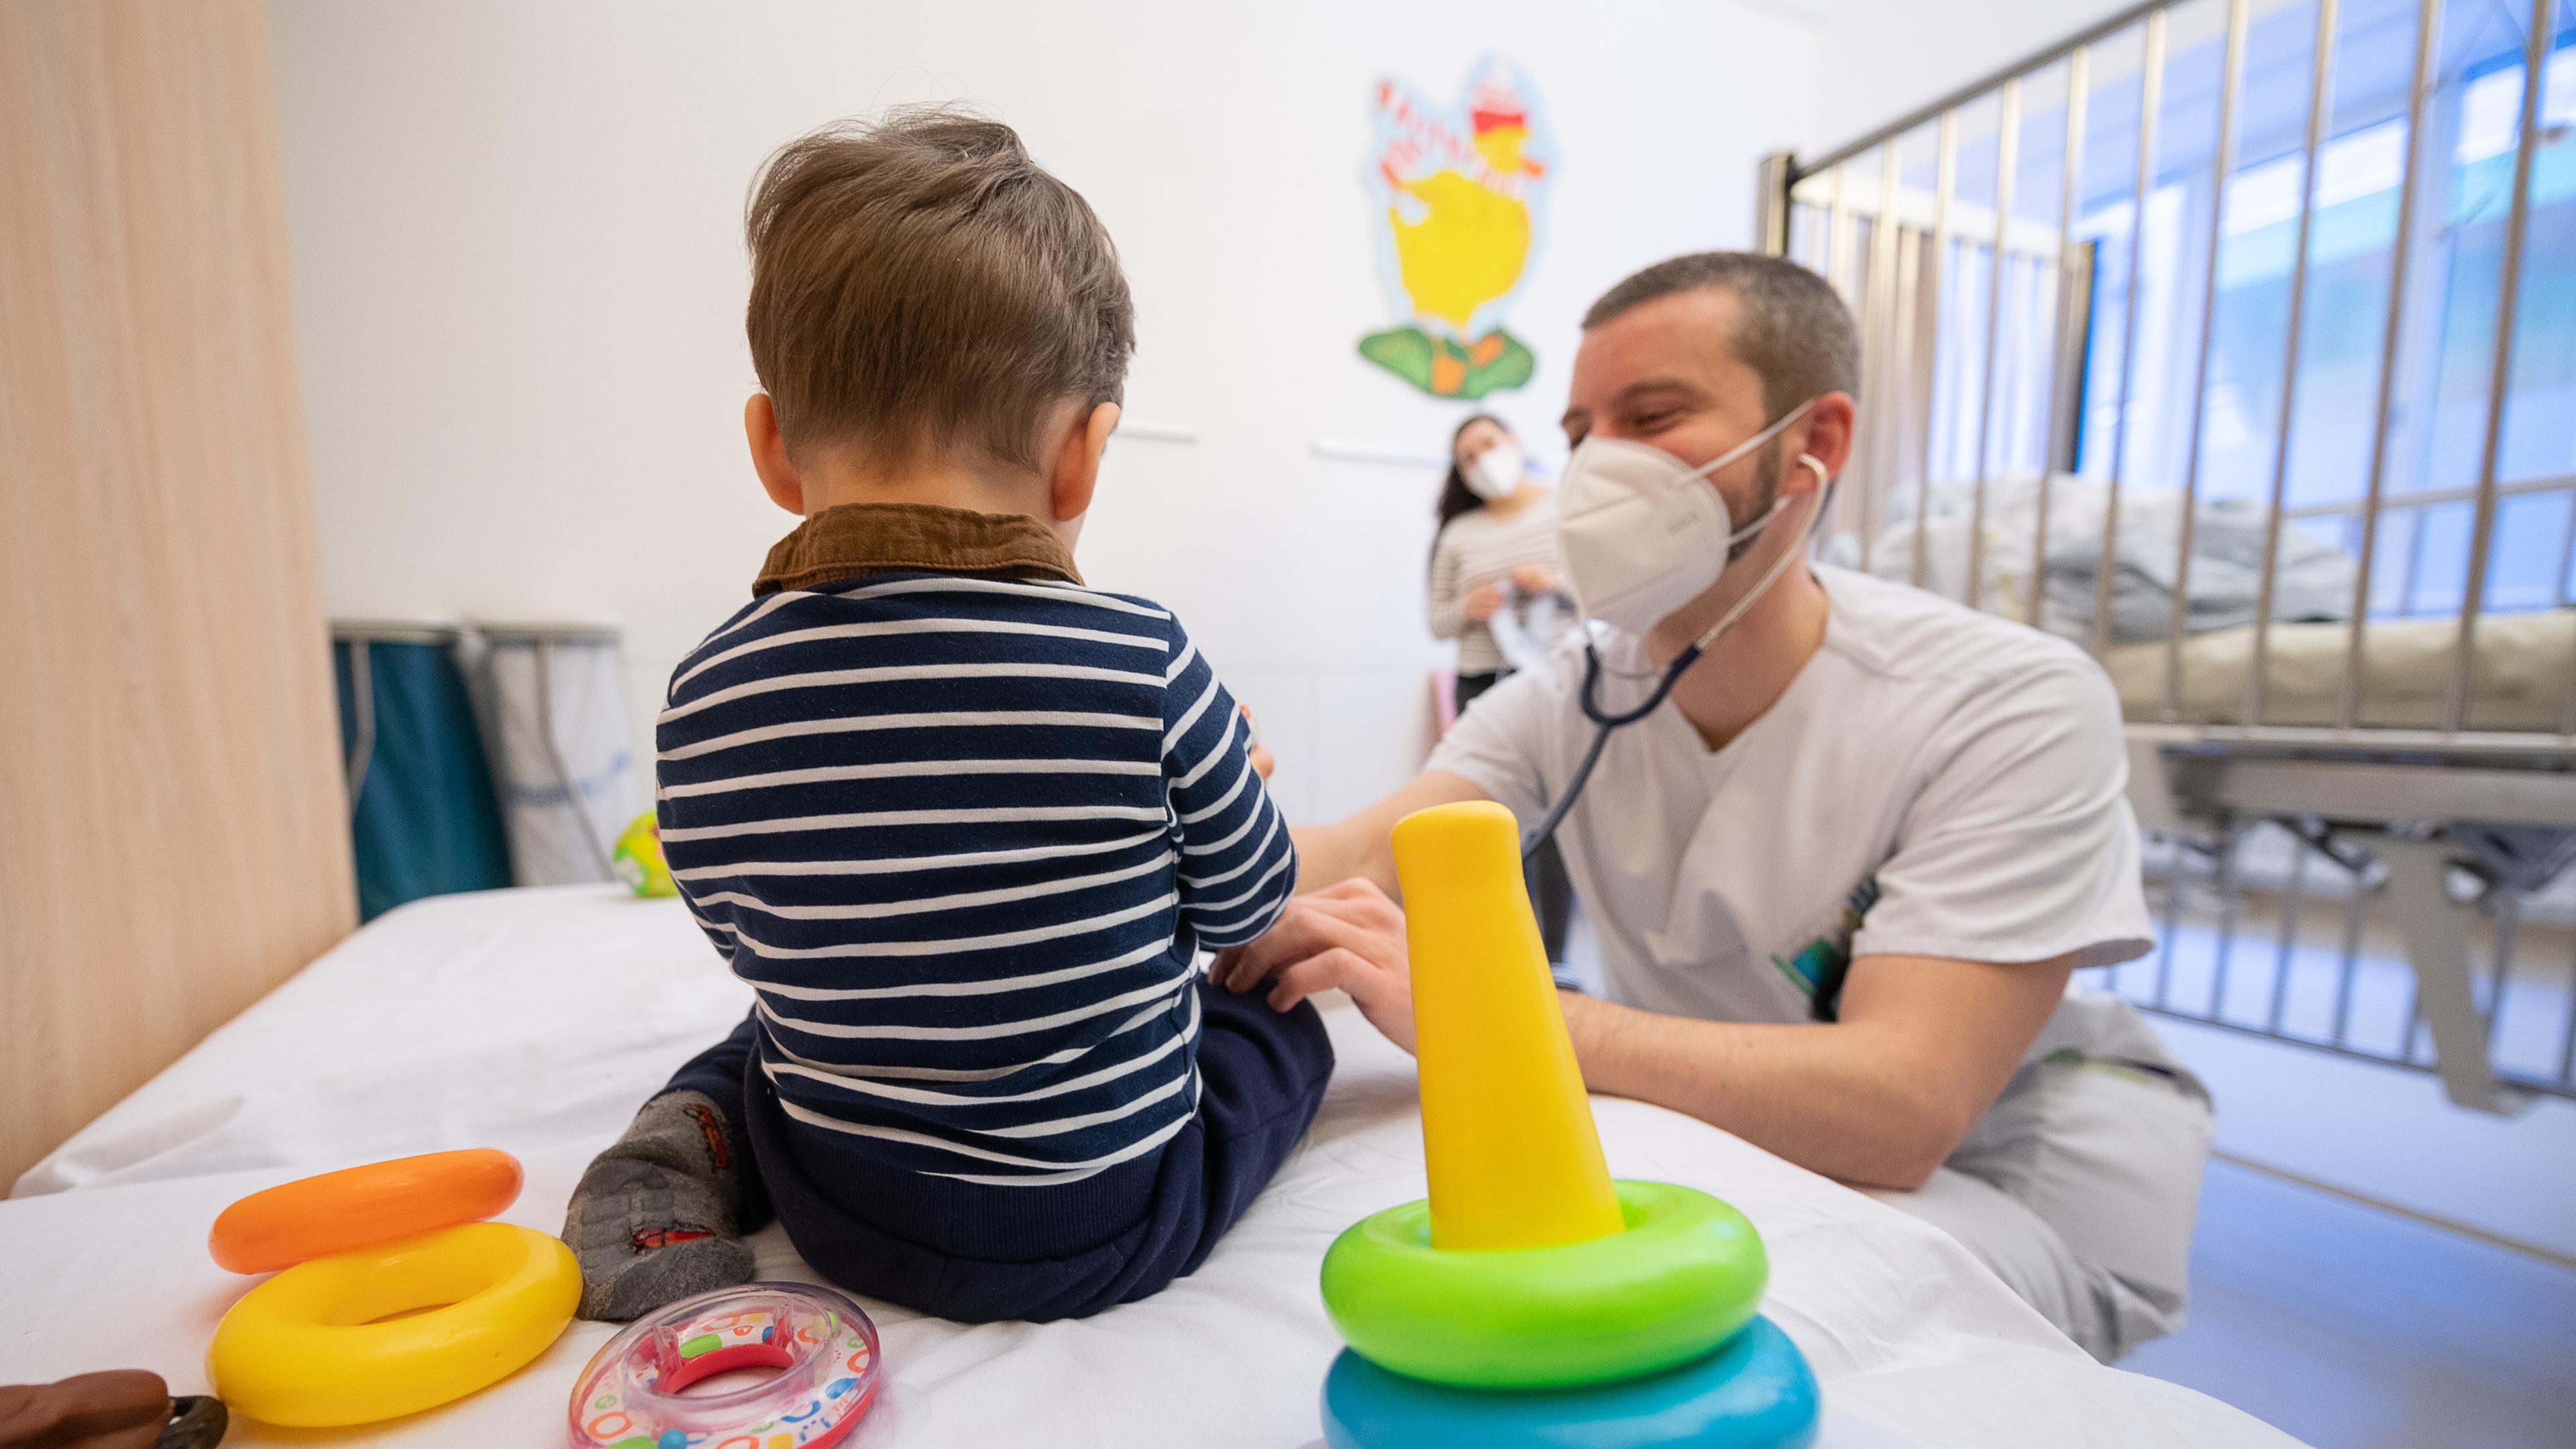 Symbolbild: Ein Arzt untersucht in einer Kinderklinik ein Kind, aufgenommen am 12.02.2021